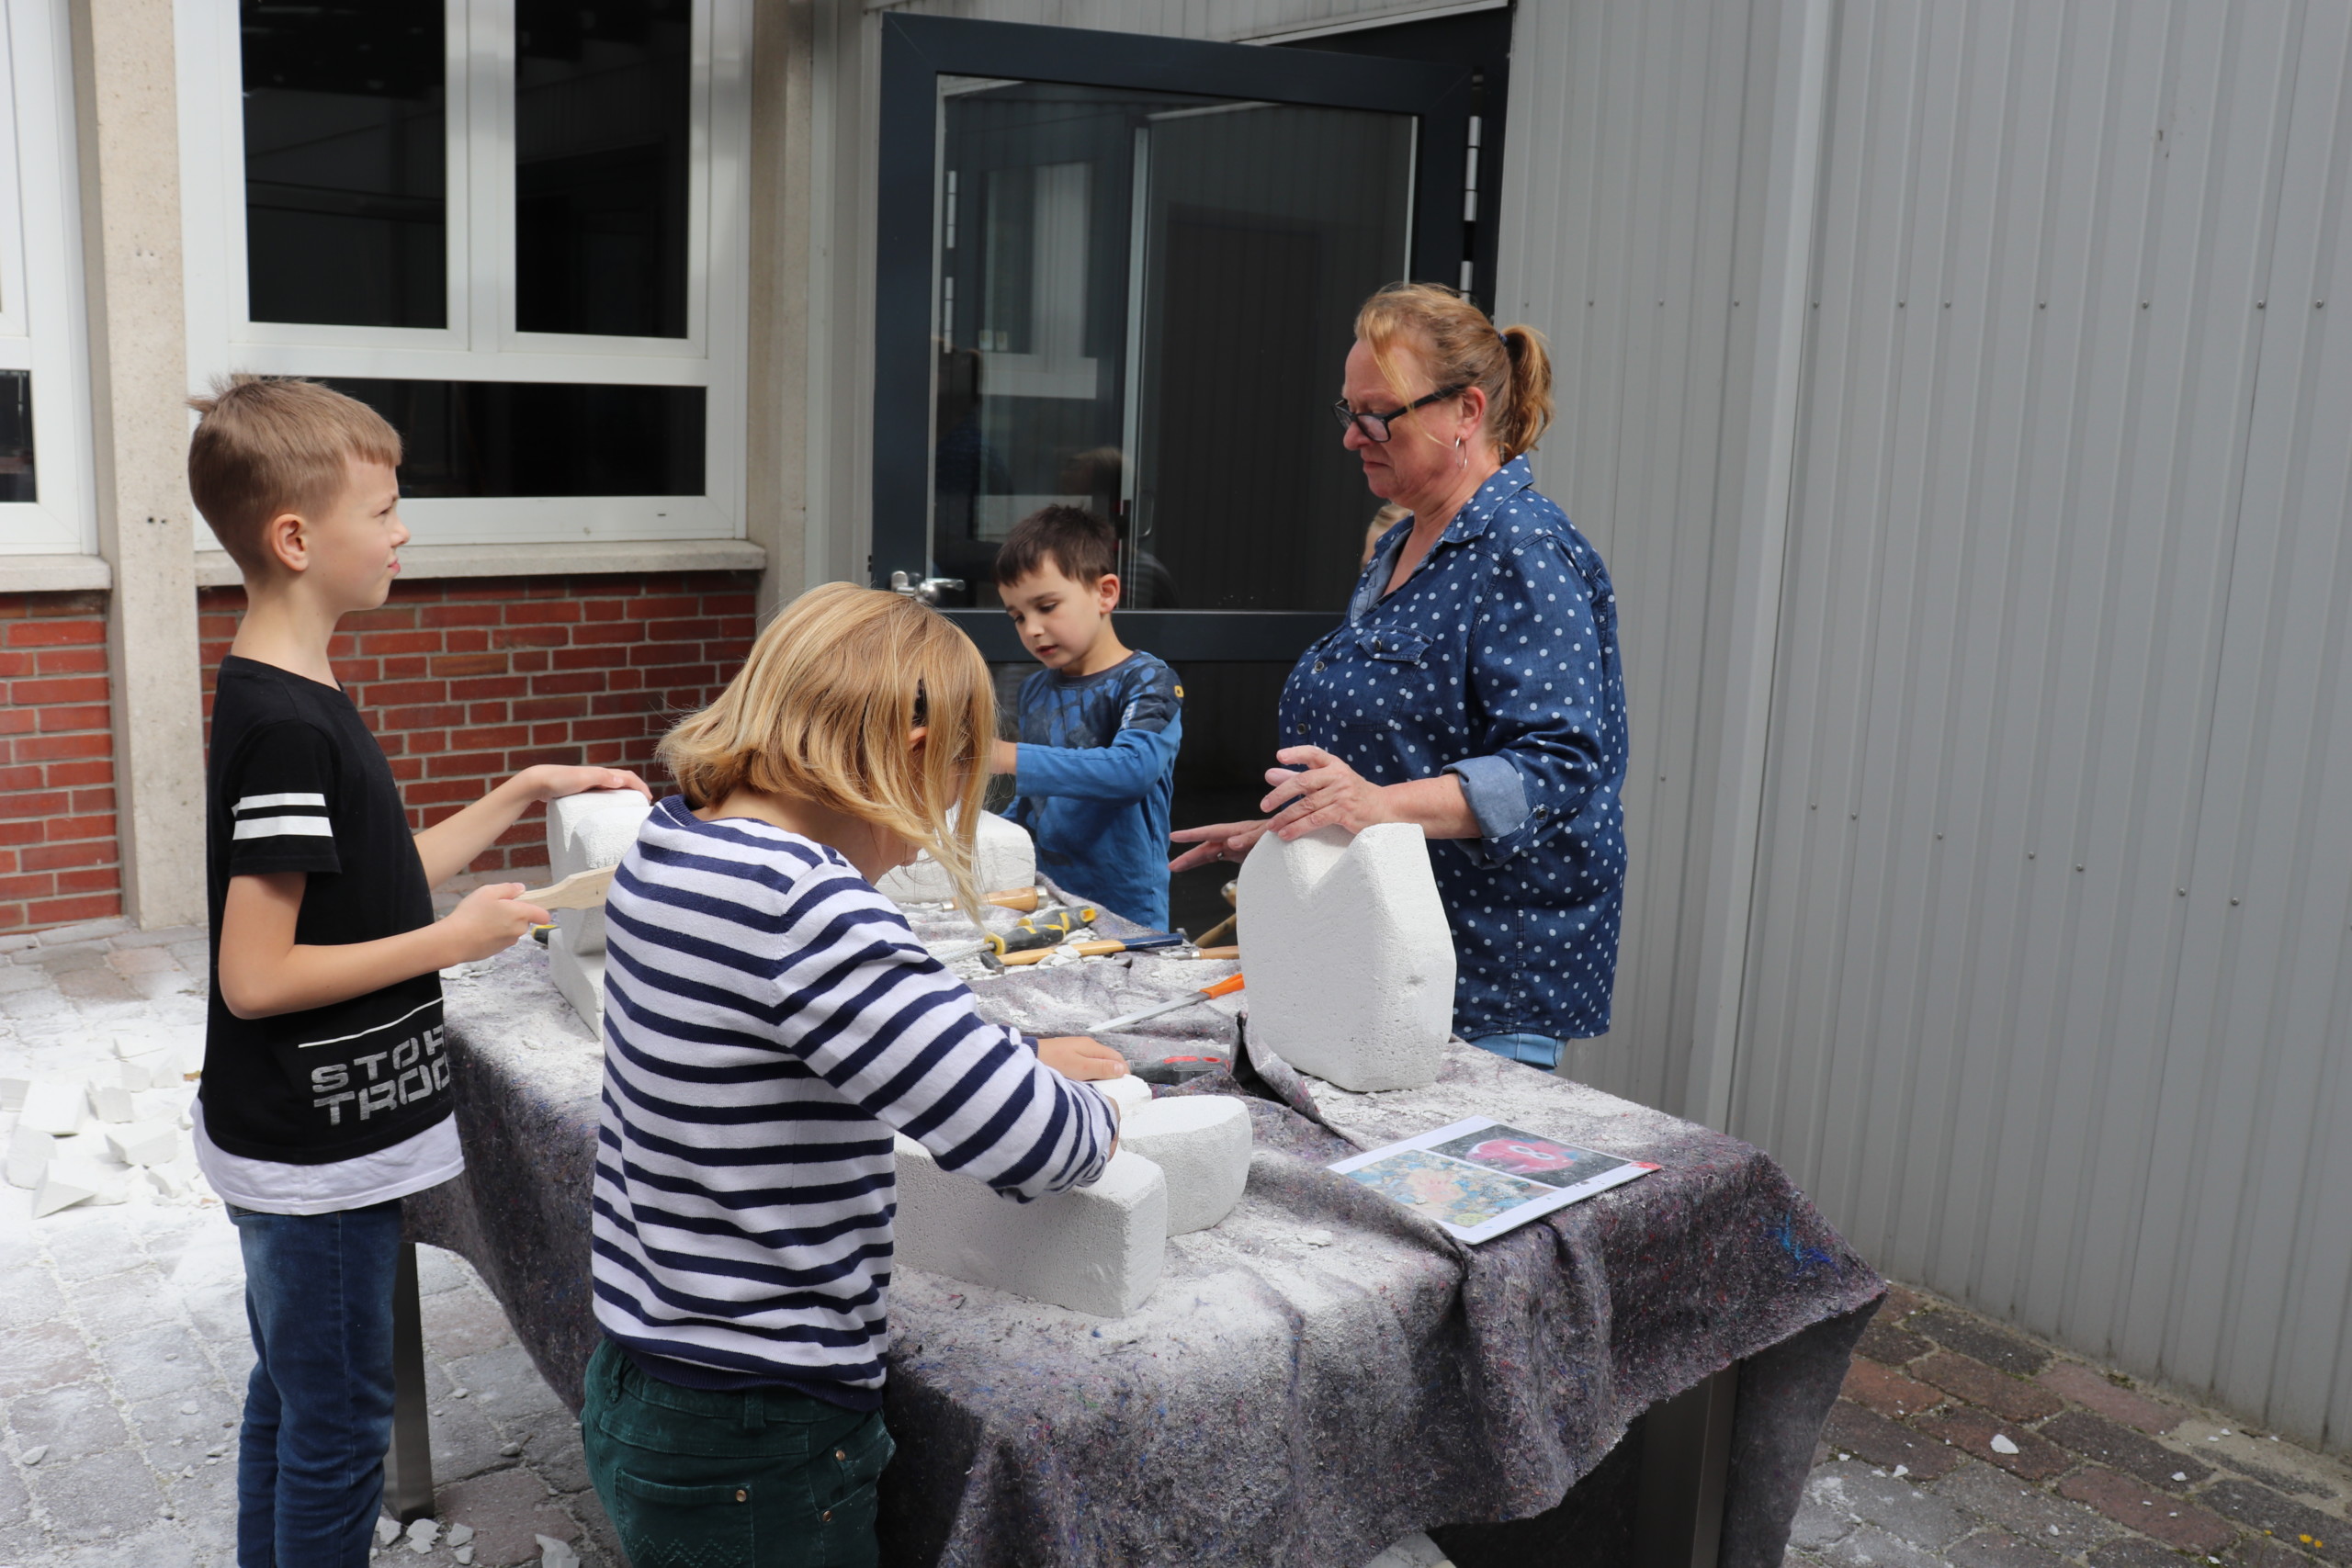 Alle Teilnehmer hatten viel Spaß beim Herstellen von Ytong-Skulpturen. Aufnahme: Wlodarczyk/Gemeinde Barßel